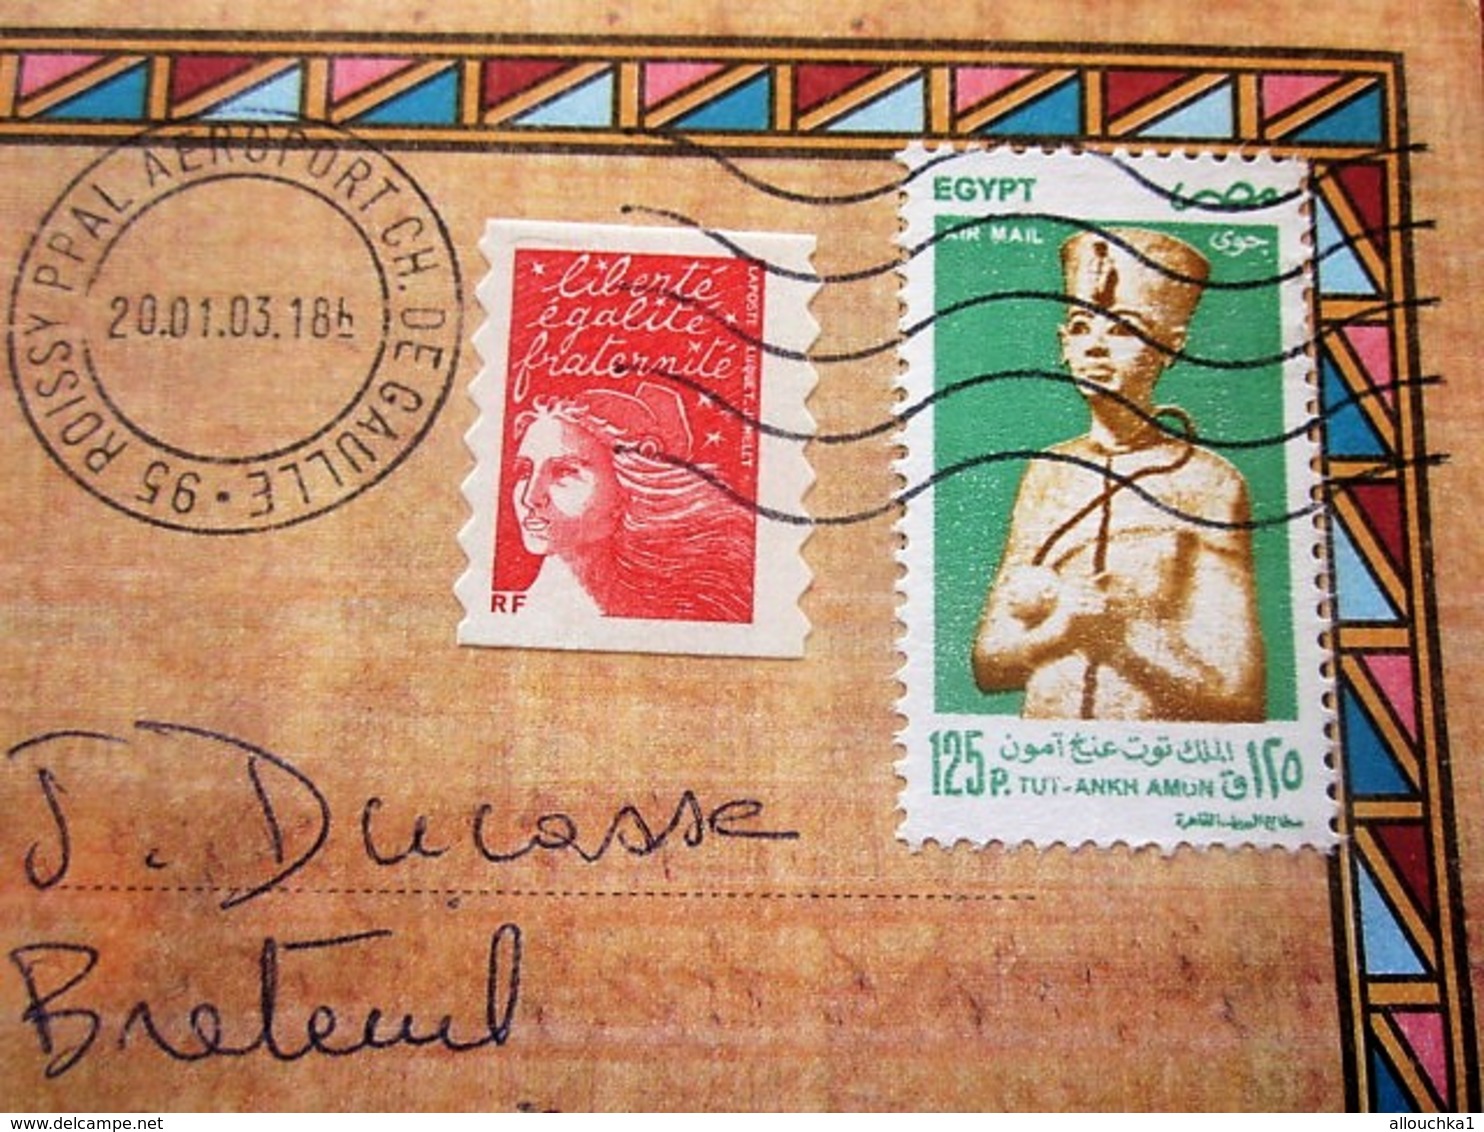 Curiosité Aff Composé Timbres Egyptien+français Posté Aéroport Orly CDG Plutot Qu'au Caire Lettre+Carte Postale Egypte - Storia Postale